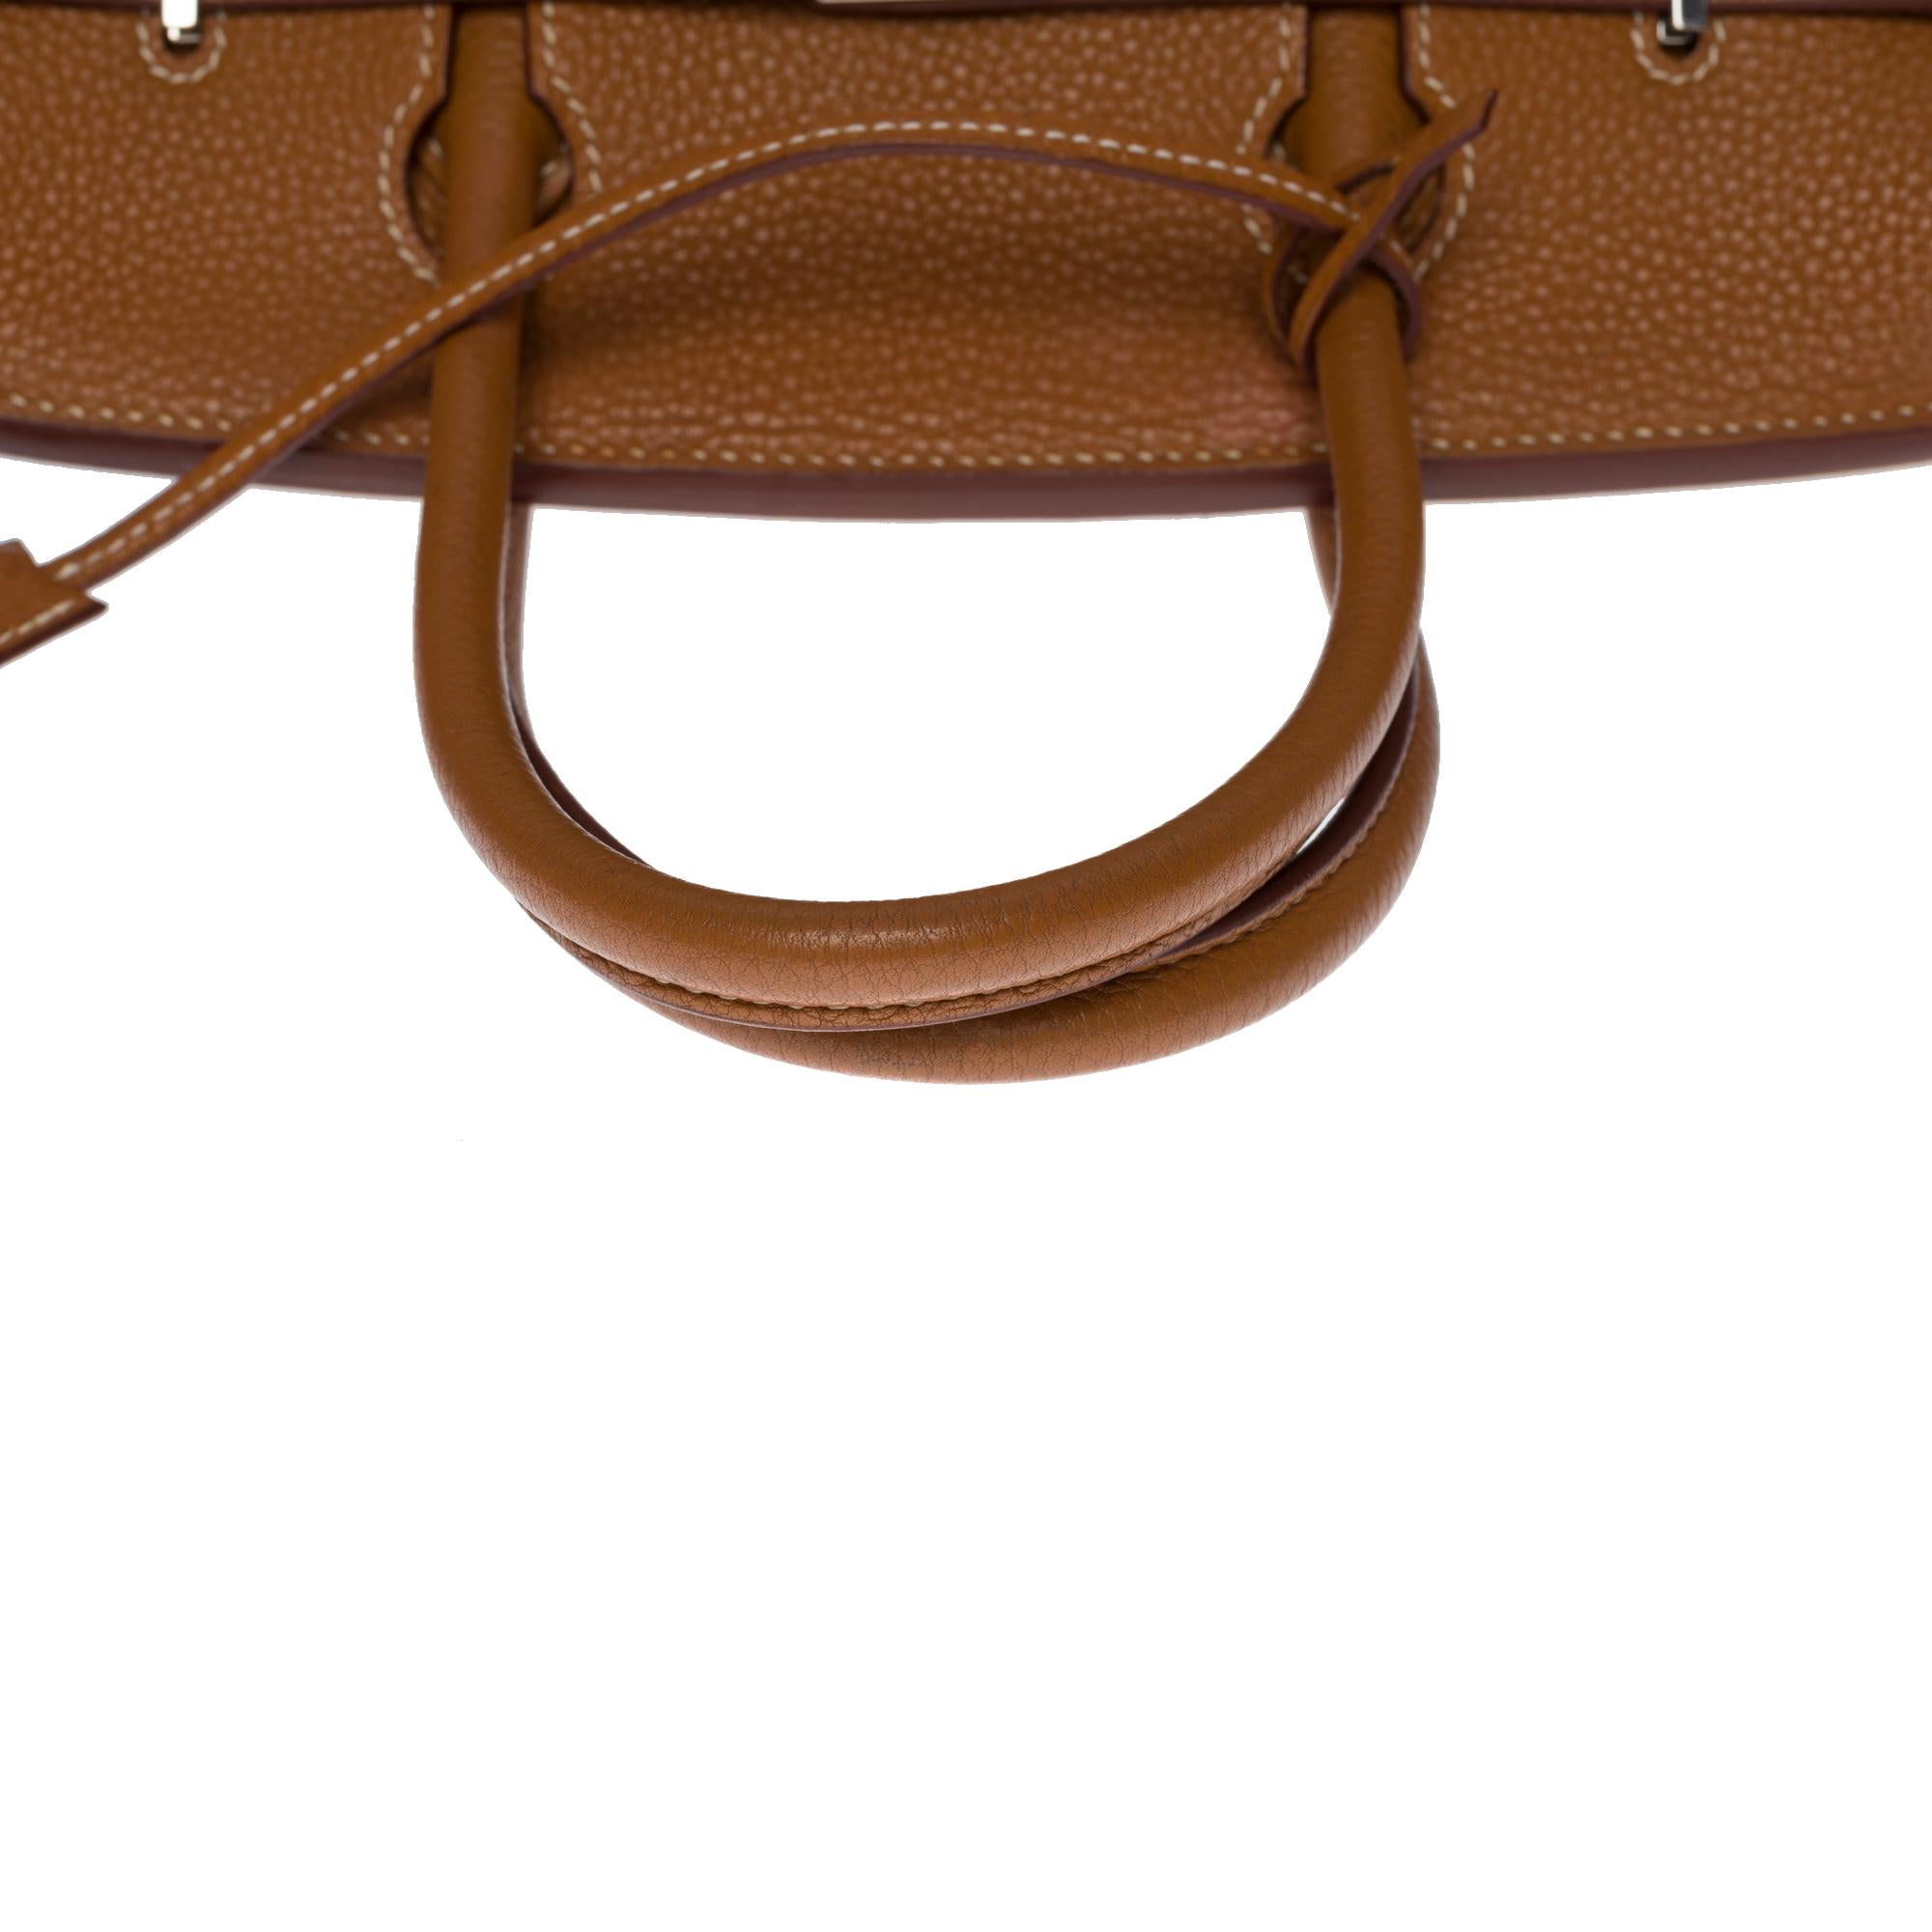 Amazing Hermès Birkin 30 handbag in Togo Gold leather, SHW 1